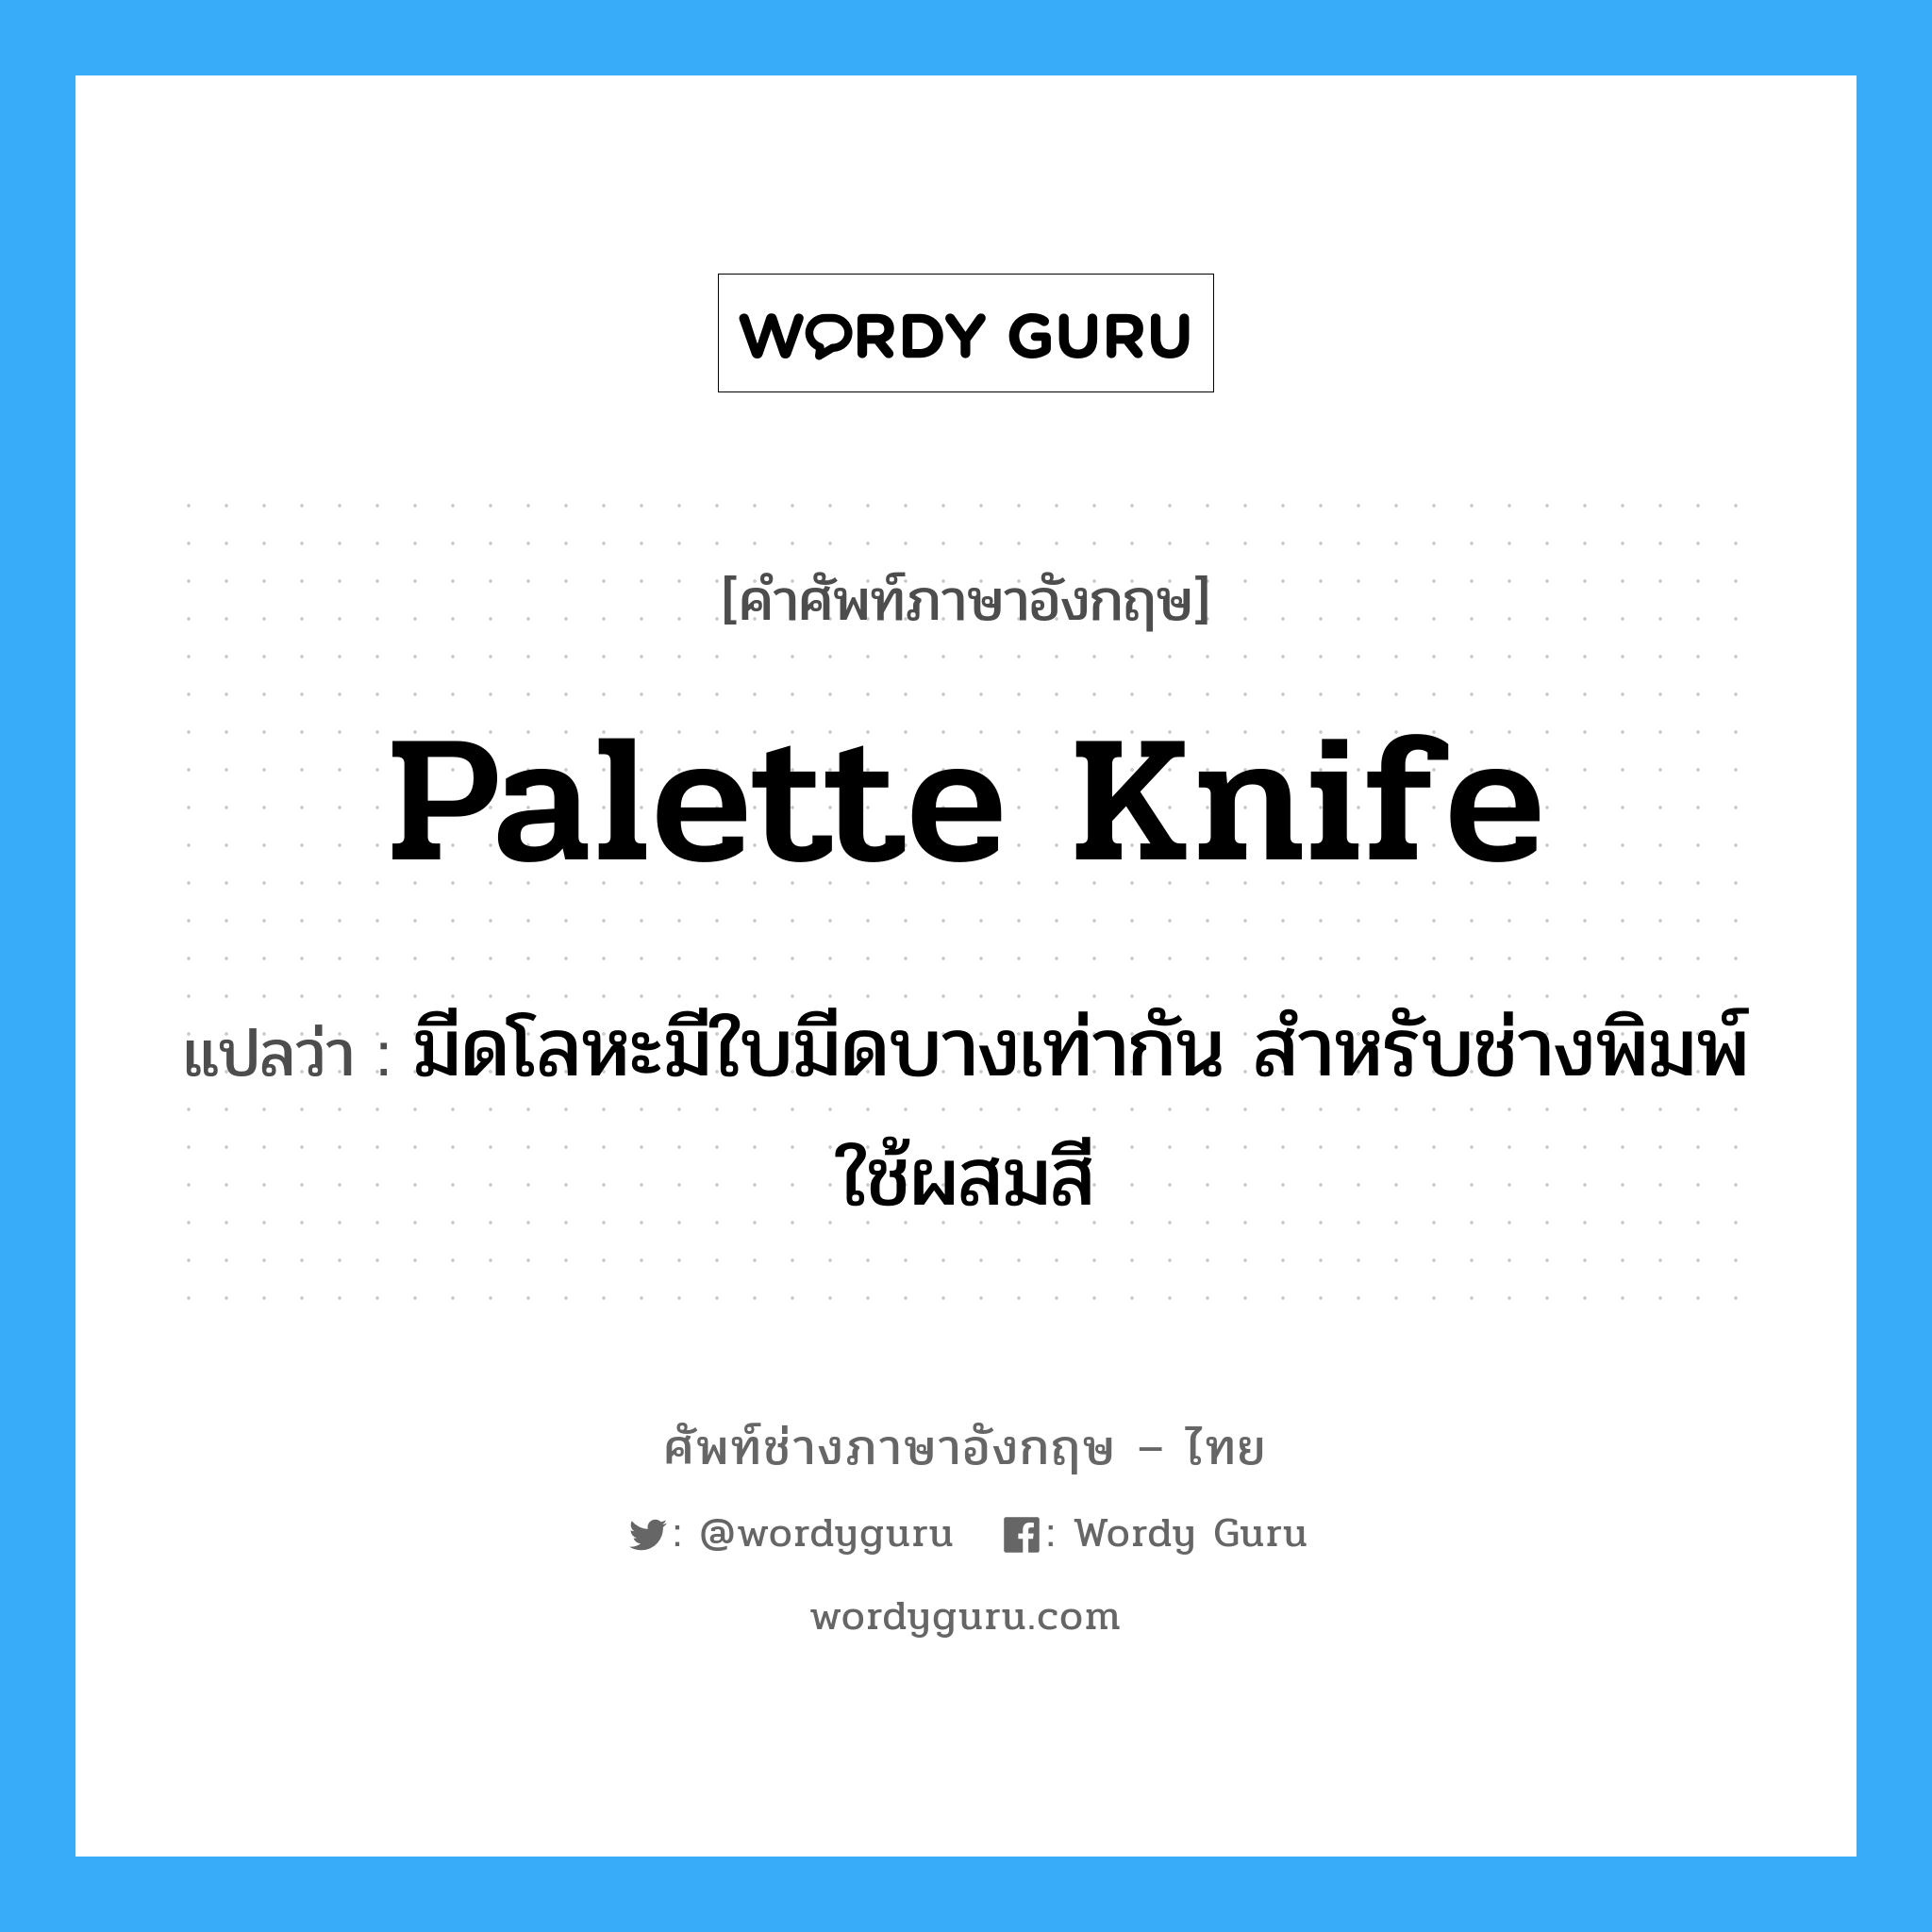 palette knife แปลว่า?, คำศัพท์ช่างภาษาอังกฤษ - ไทย palette knife คำศัพท์ภาษาอังกฤษ palette knife แปลว่า มีดโลหะมีใบมีดบางเท่ากัน สำหรับช่างพิมพ์ใช้ผสมสี